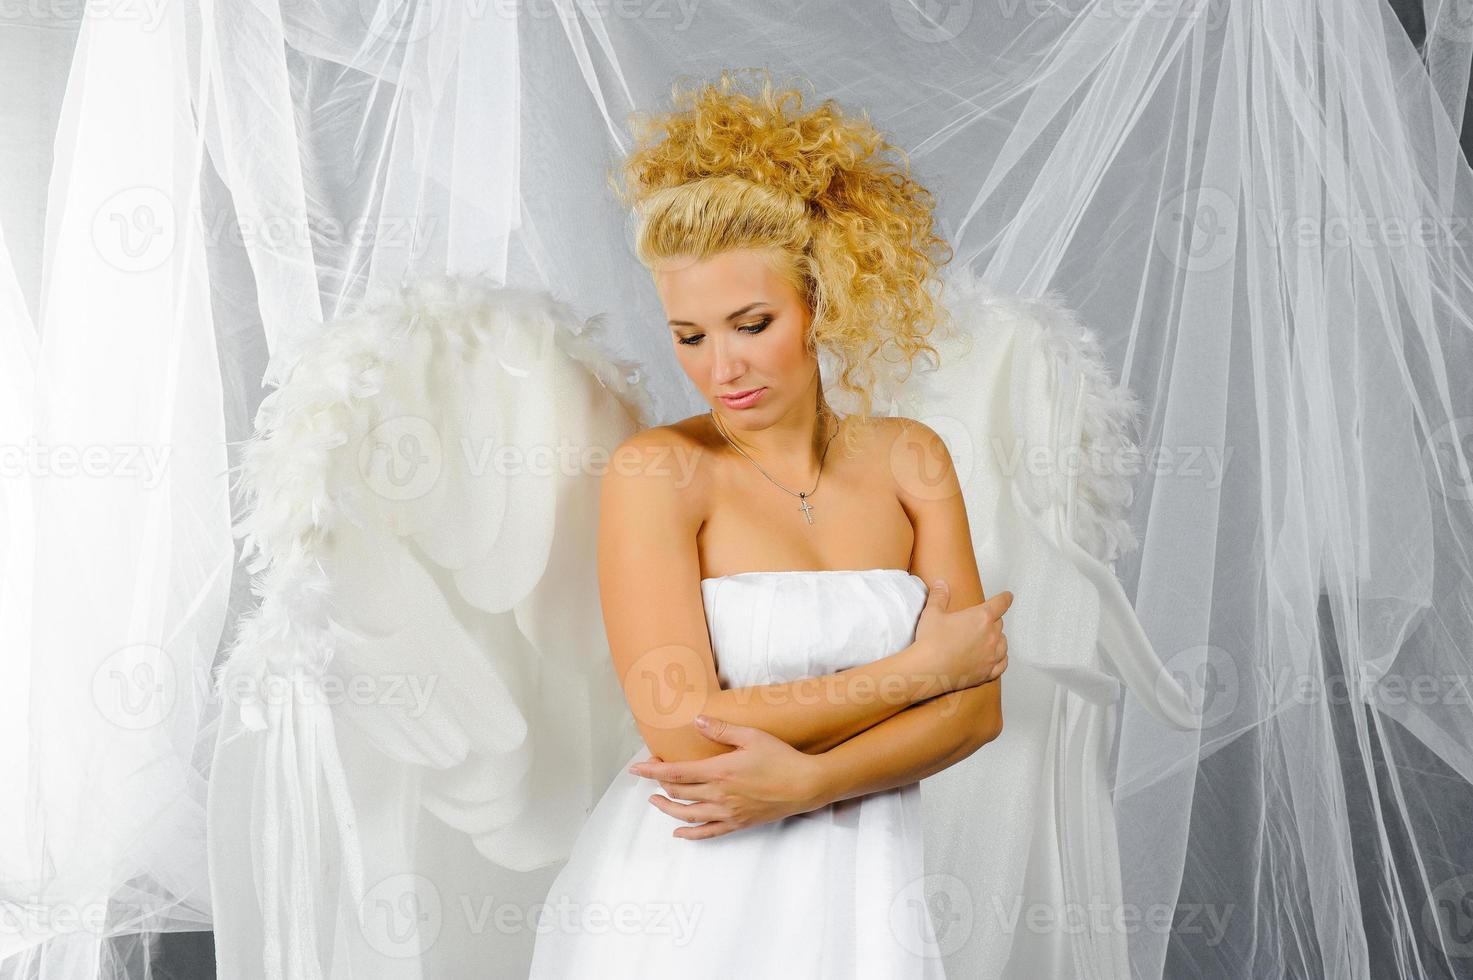 mulher sexy fantasiada de anjo posando na frente da câmera. foto